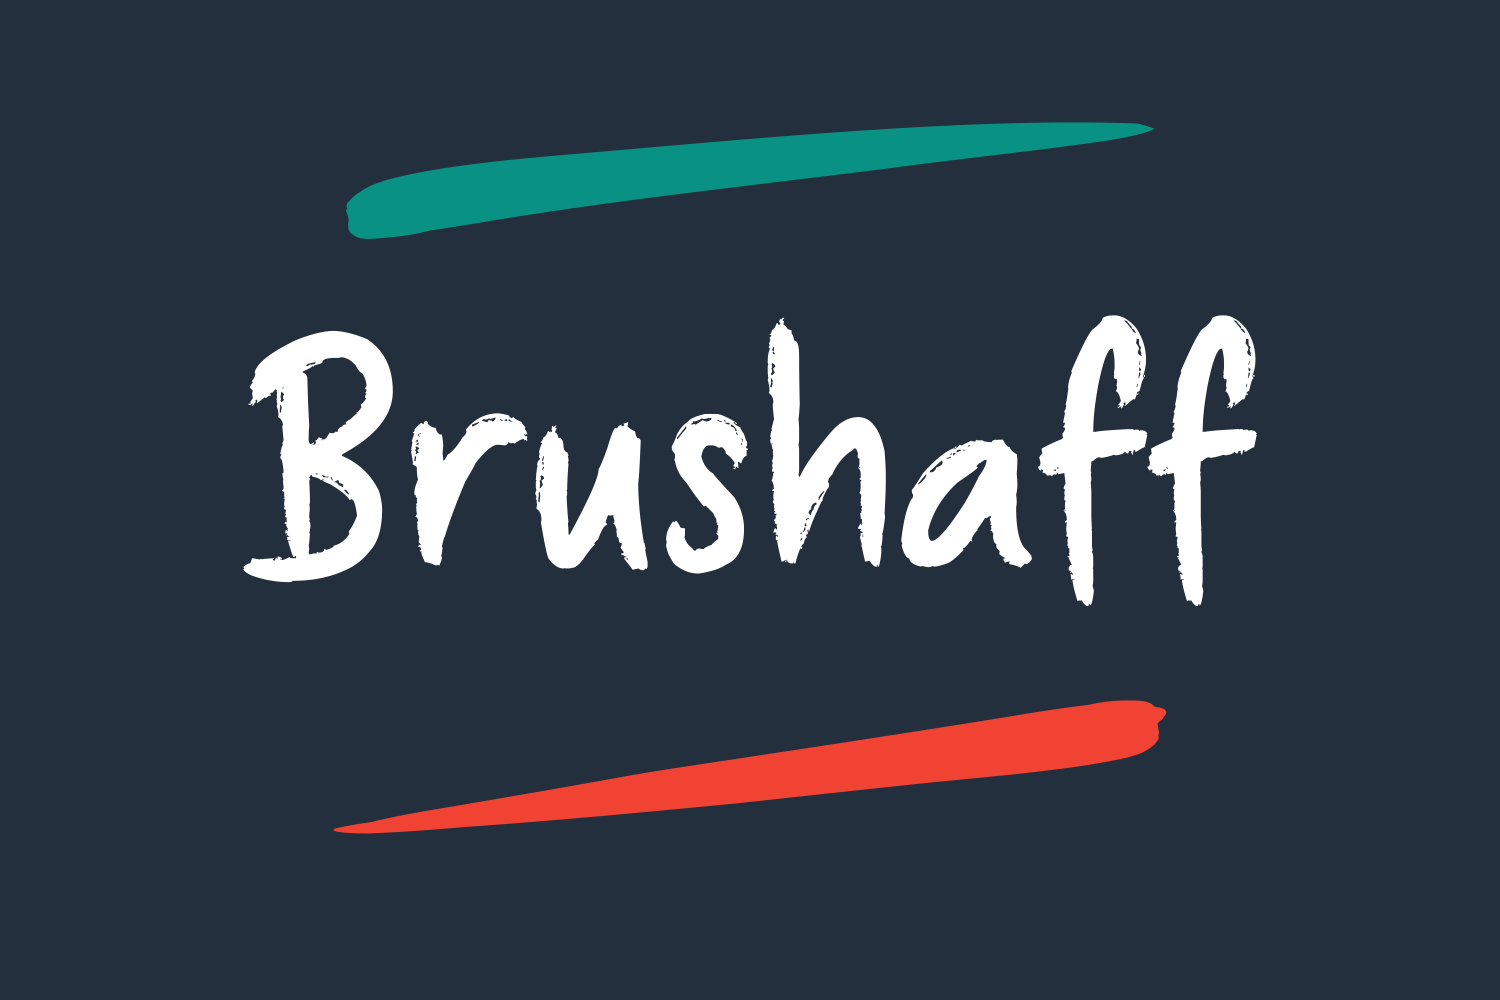 Brushaff